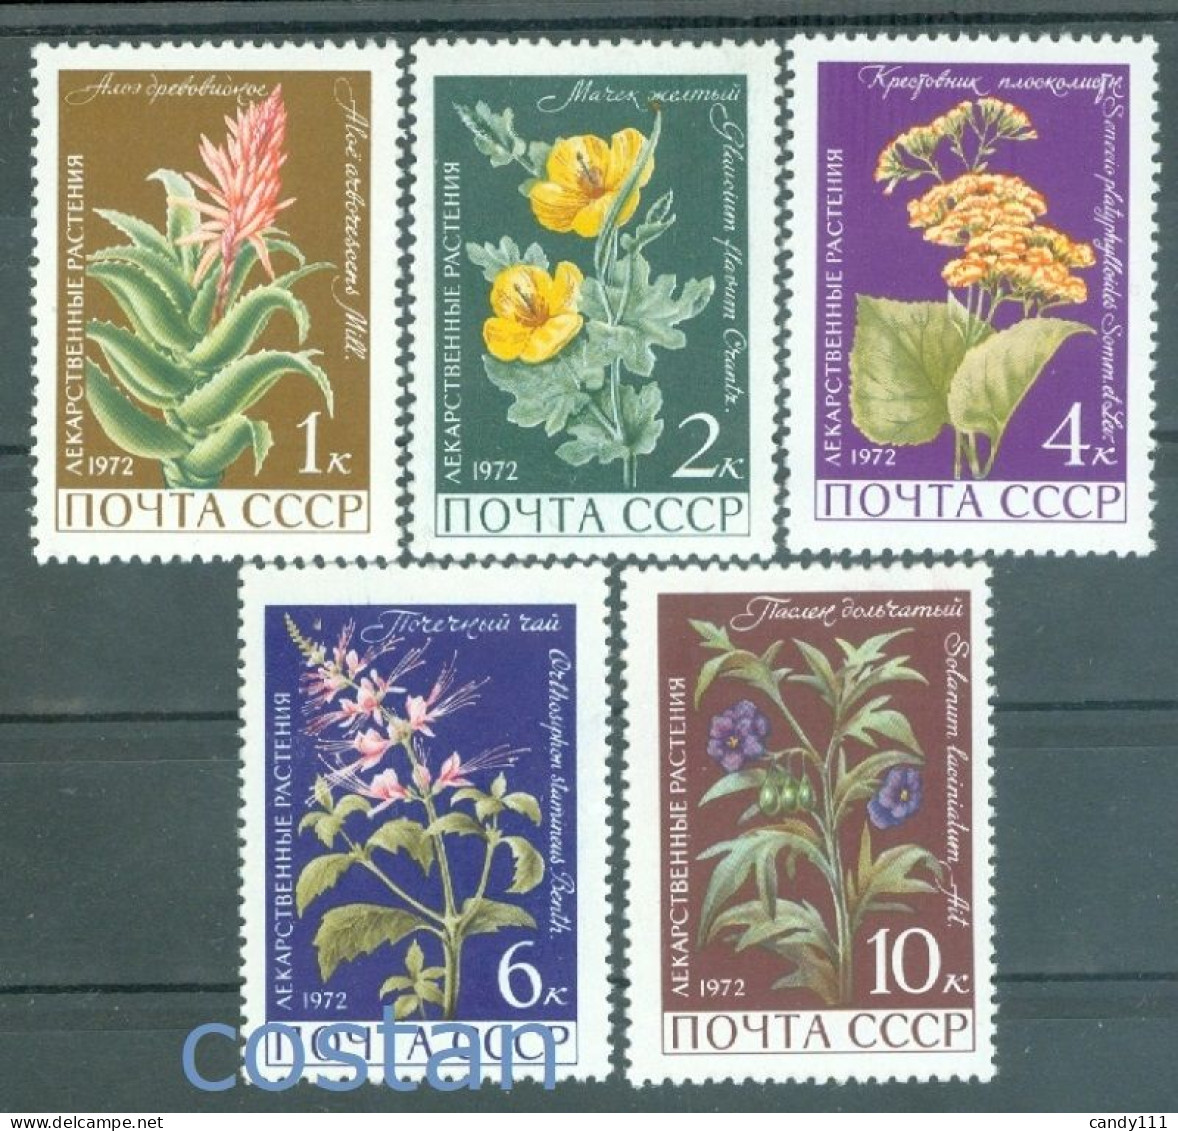 1972 Medicinal Plants,krantz Aloe,sea Poppy,poroporo,Orthosiphon,Russia,3988,MNH - Piante Medicinali